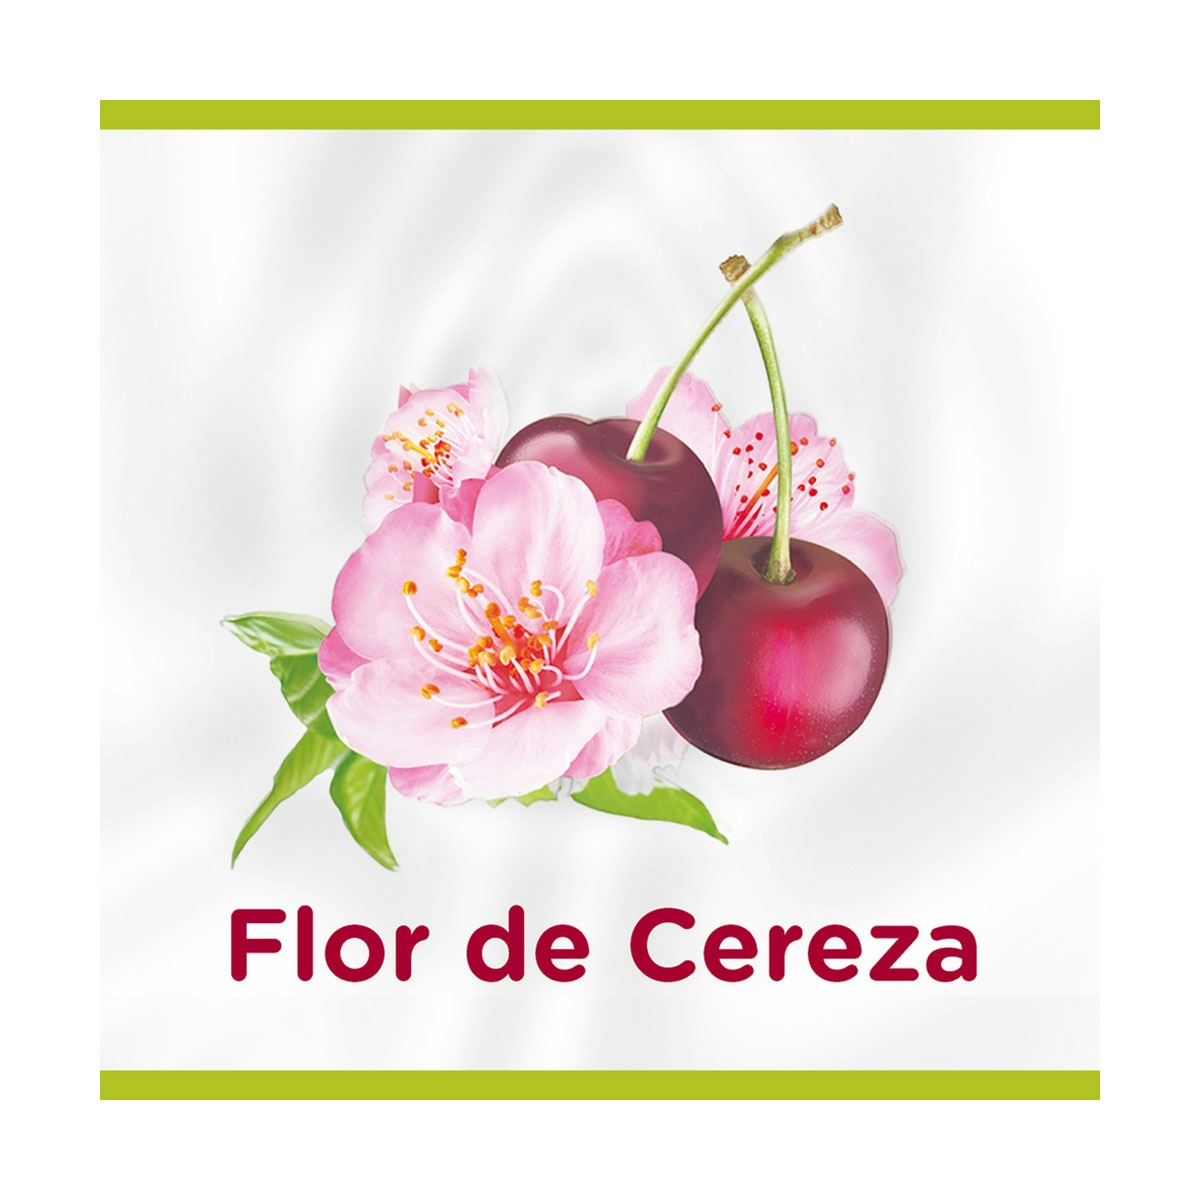 Gel de ducha o baño Palmolive NB Flor de Cereza, hidratante 600ml